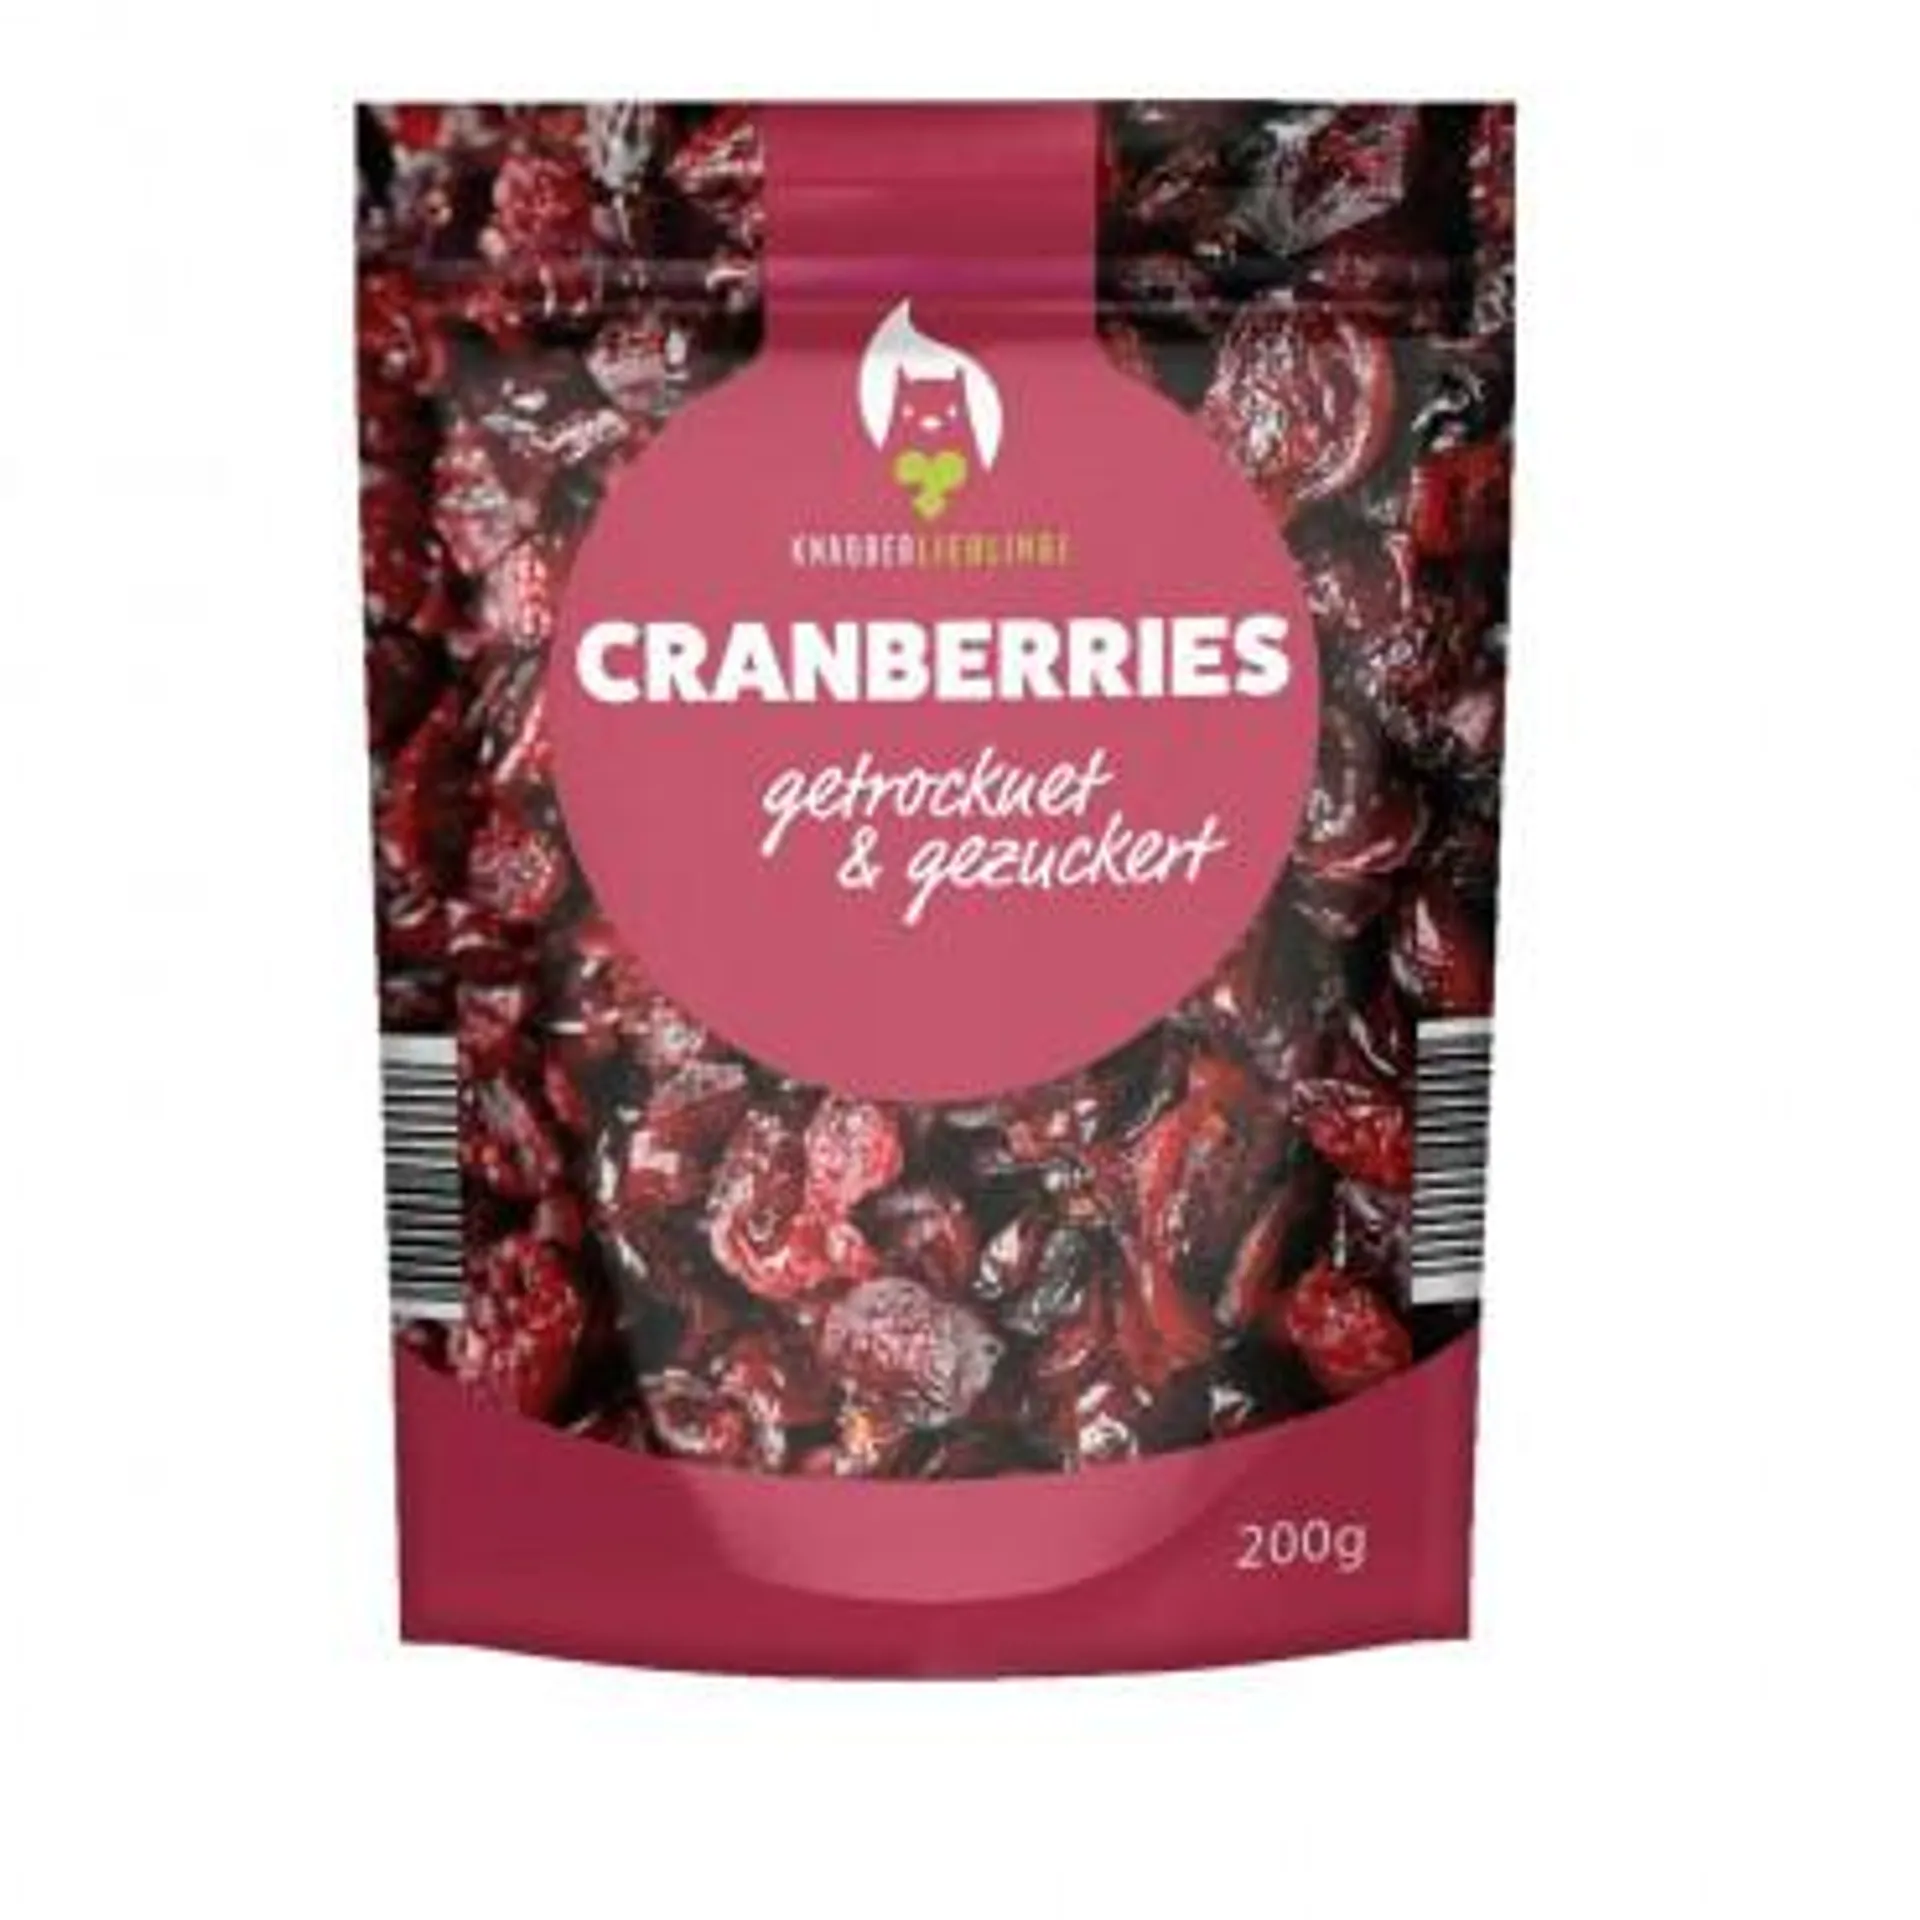 Cranberries, getrocknet&gezuckert